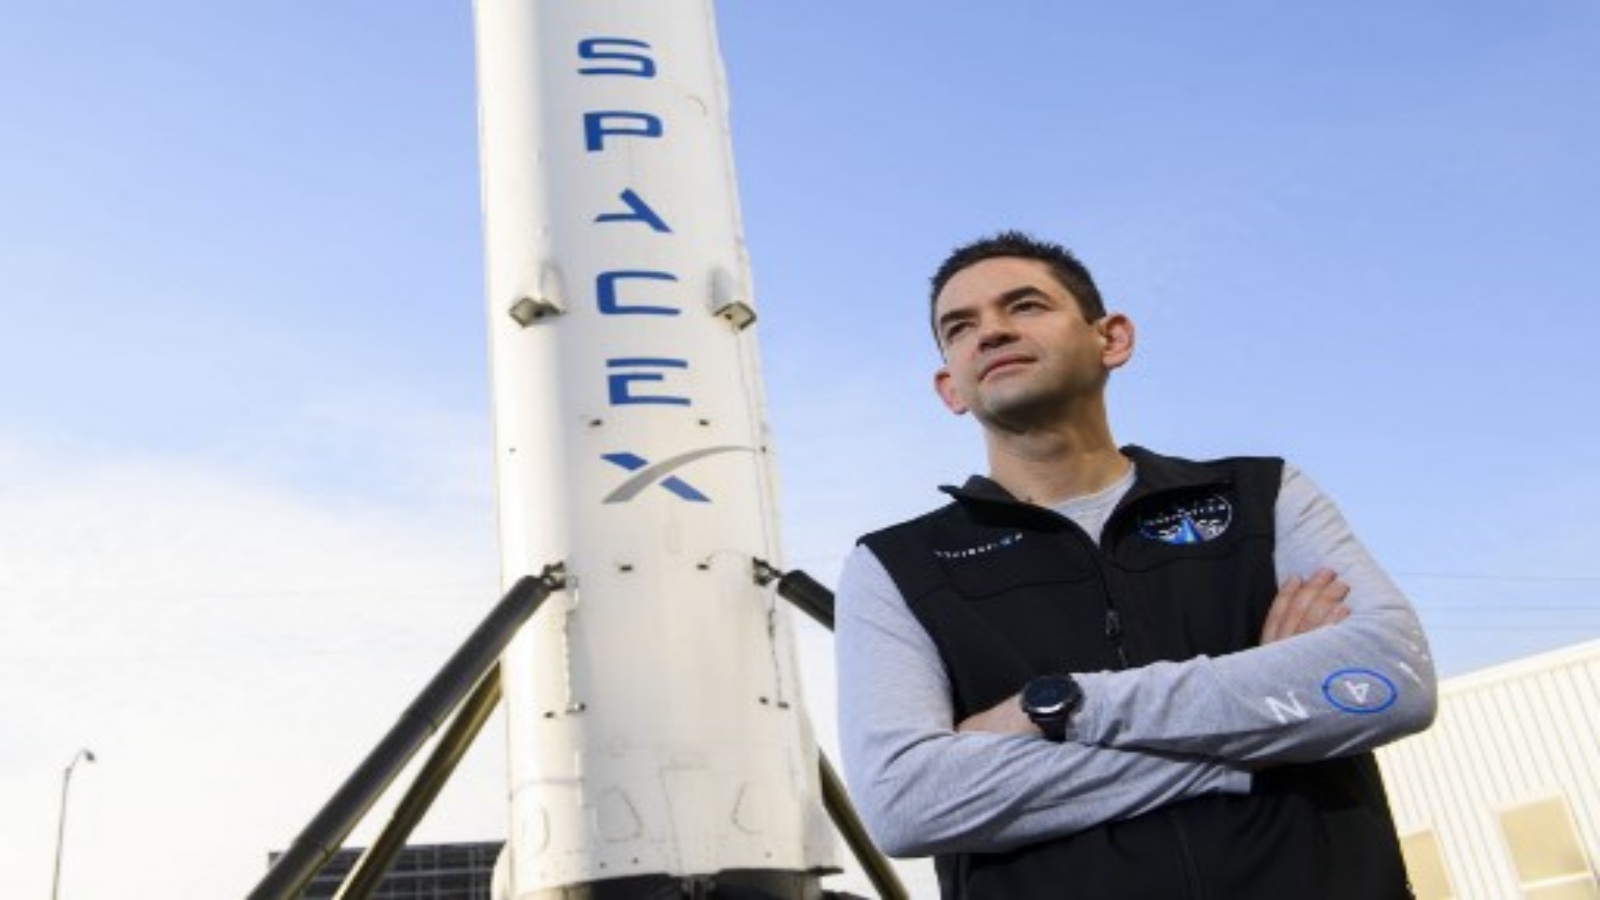 جاريد أيساكمان المؤسس والرئيس التنفيذي لشركة Shift4 Payments في صورة أمام المرحلة الأولى المستعادة من صاروخ Falcon 9 في (SpaceX) في 2 فبراير 2021 في هوثورن ، كاليفورنيا.